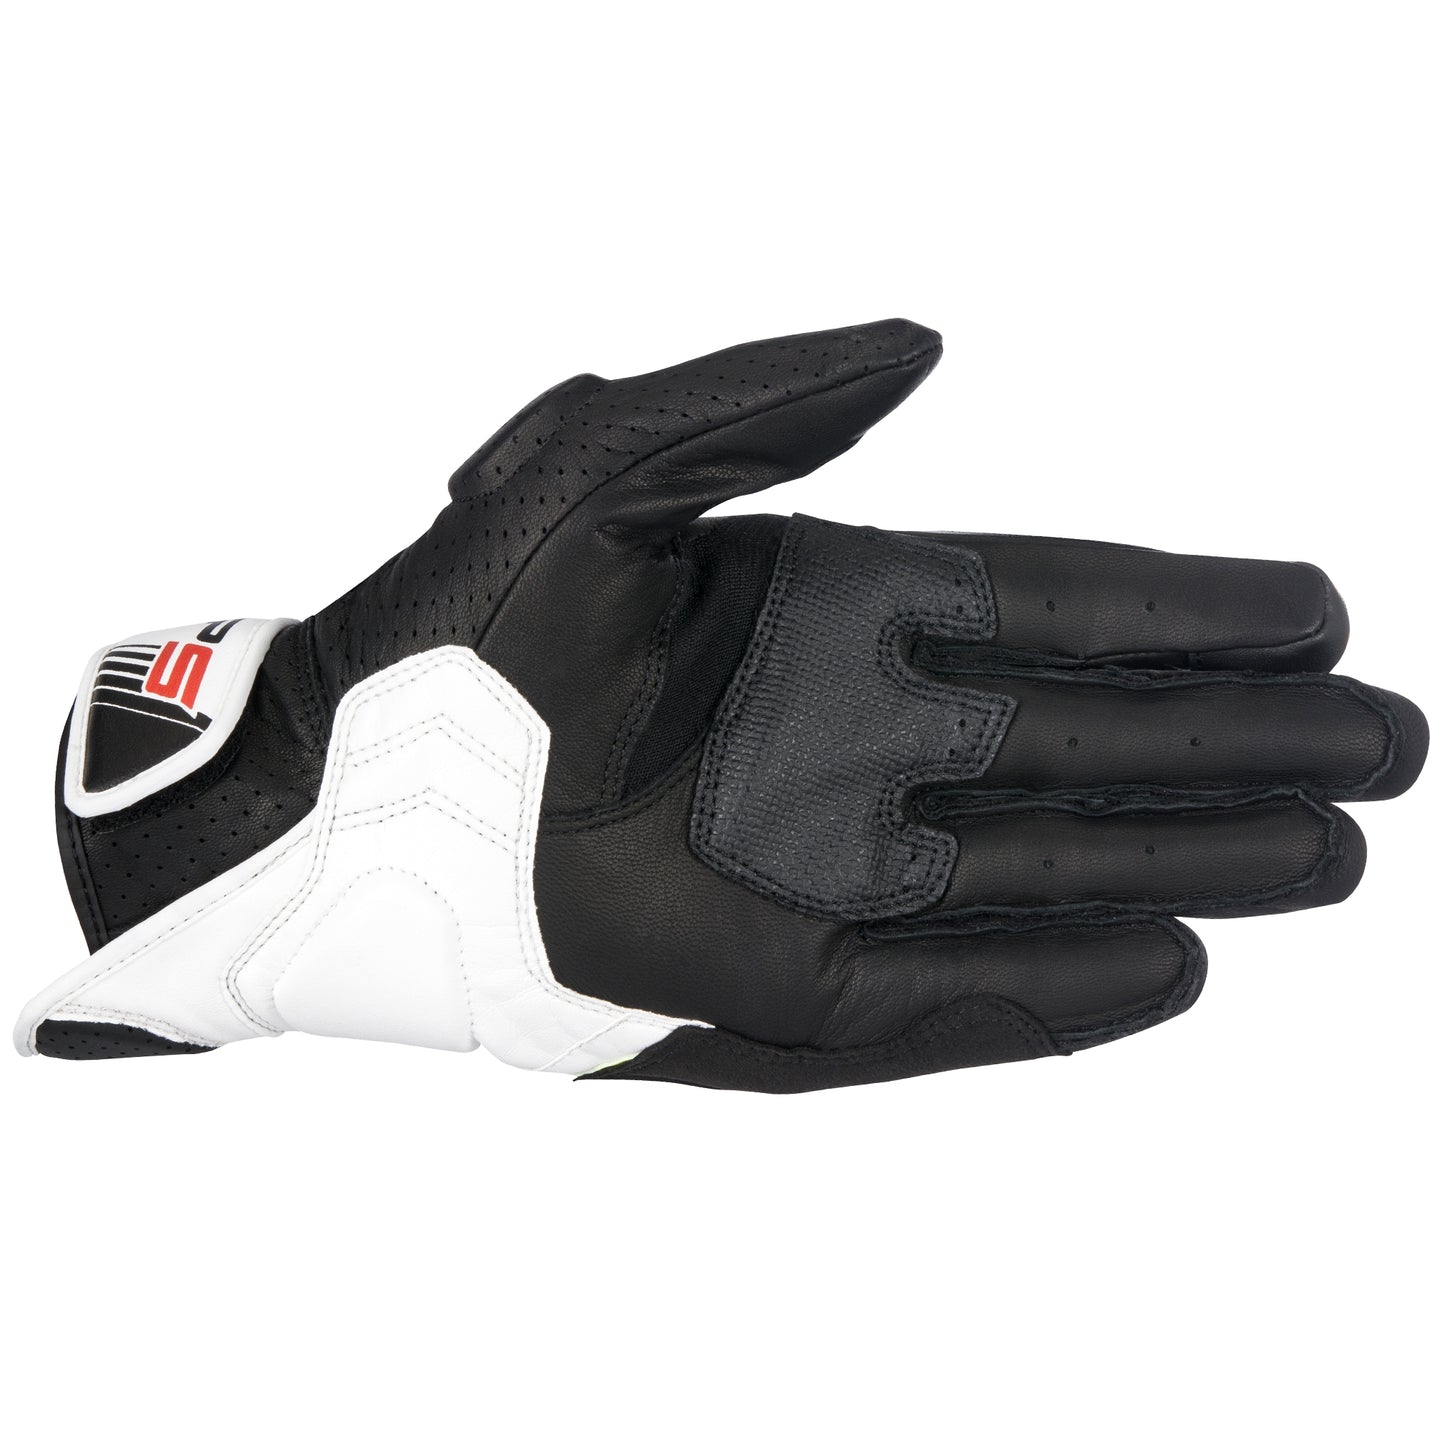 Alpinestars SP-5 Gloves - Black/White/Red (123)